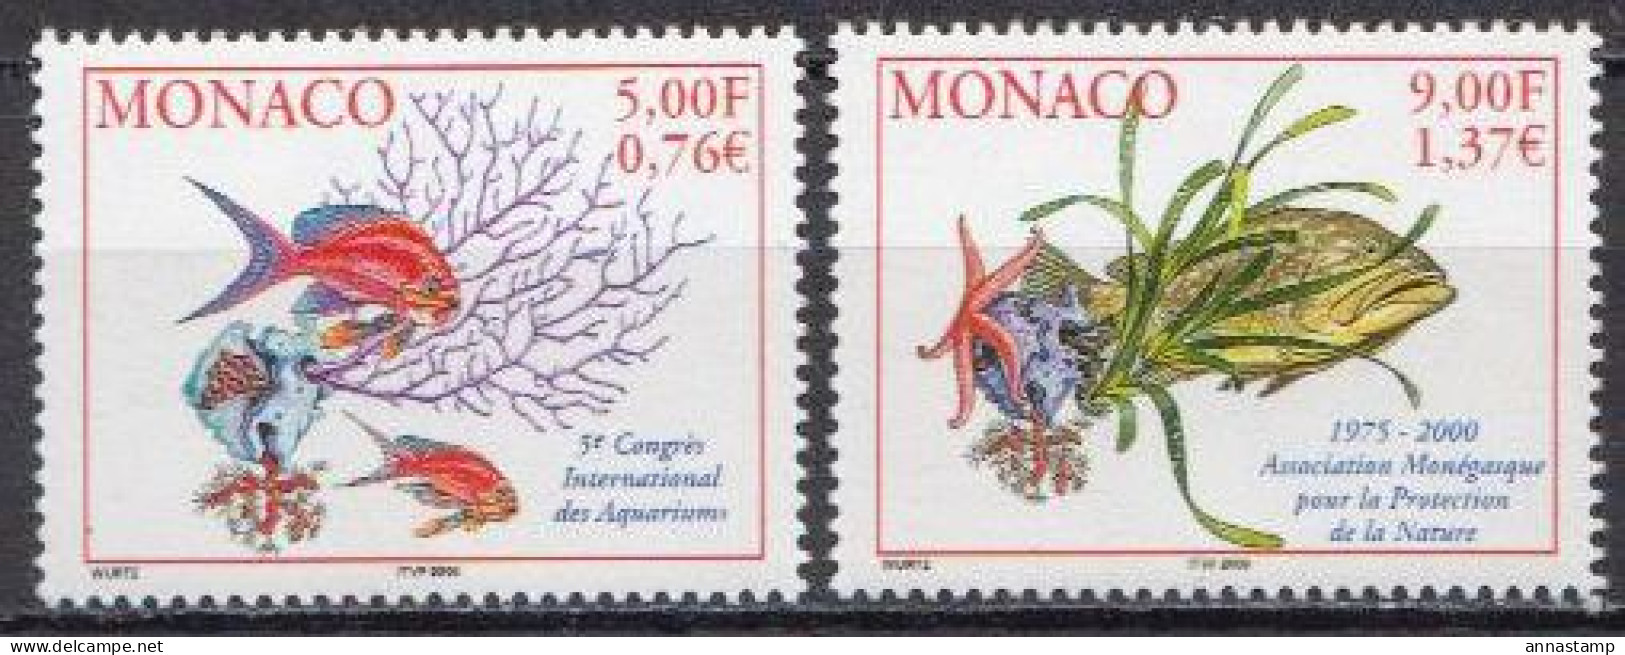 Monaco MNH Set - Meereswelt